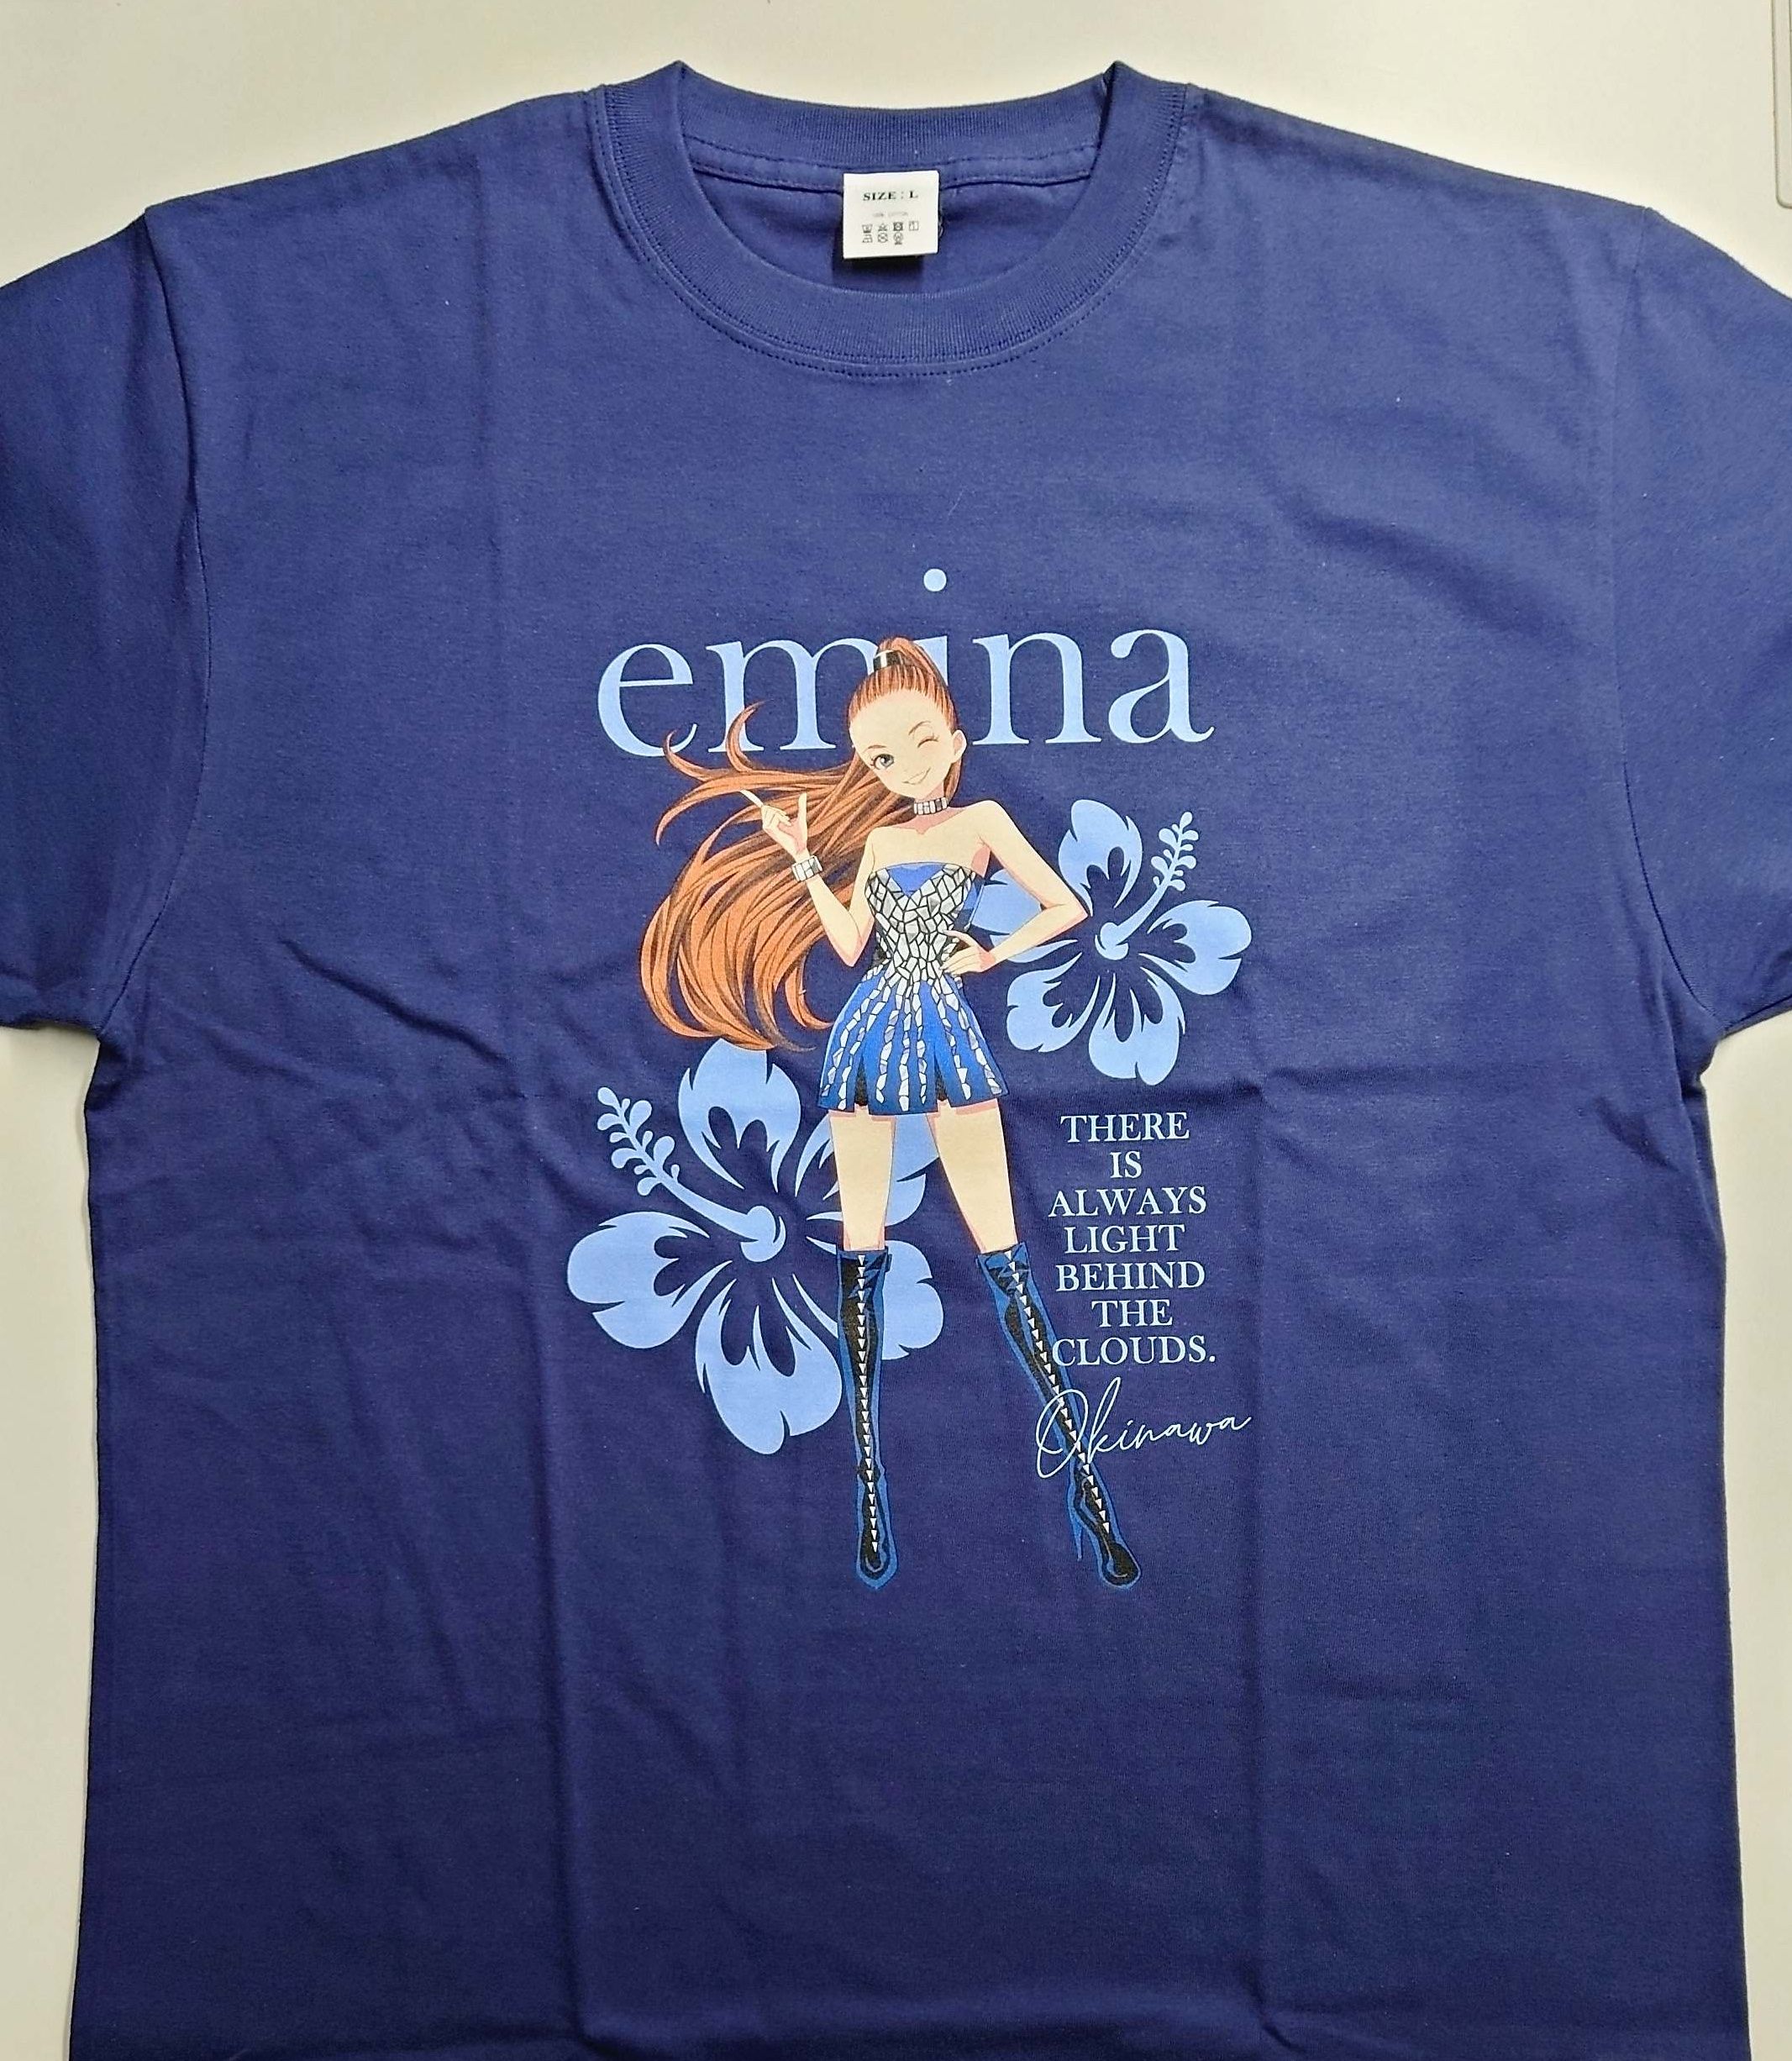 安室奈美恵さん公認キャラクター「emina」Tシャツ 沖縄県内のセブン